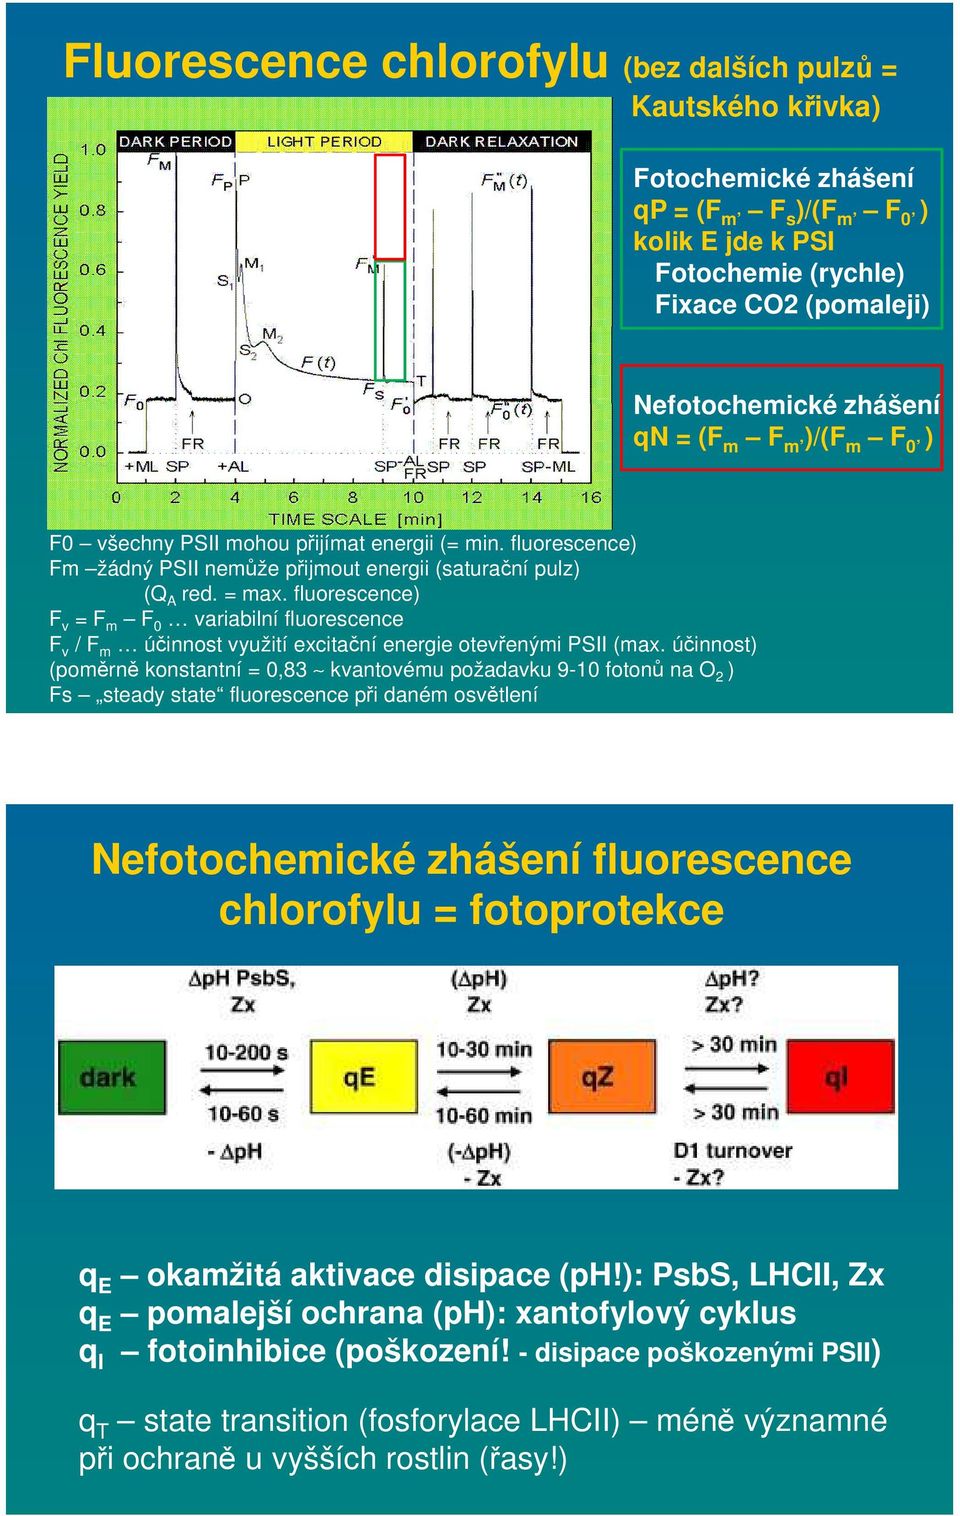 fluorescence) F v = F m F 0 variabilní fluorescence F v / F m účinnost využití excitační energie otevřenými PSII (max.